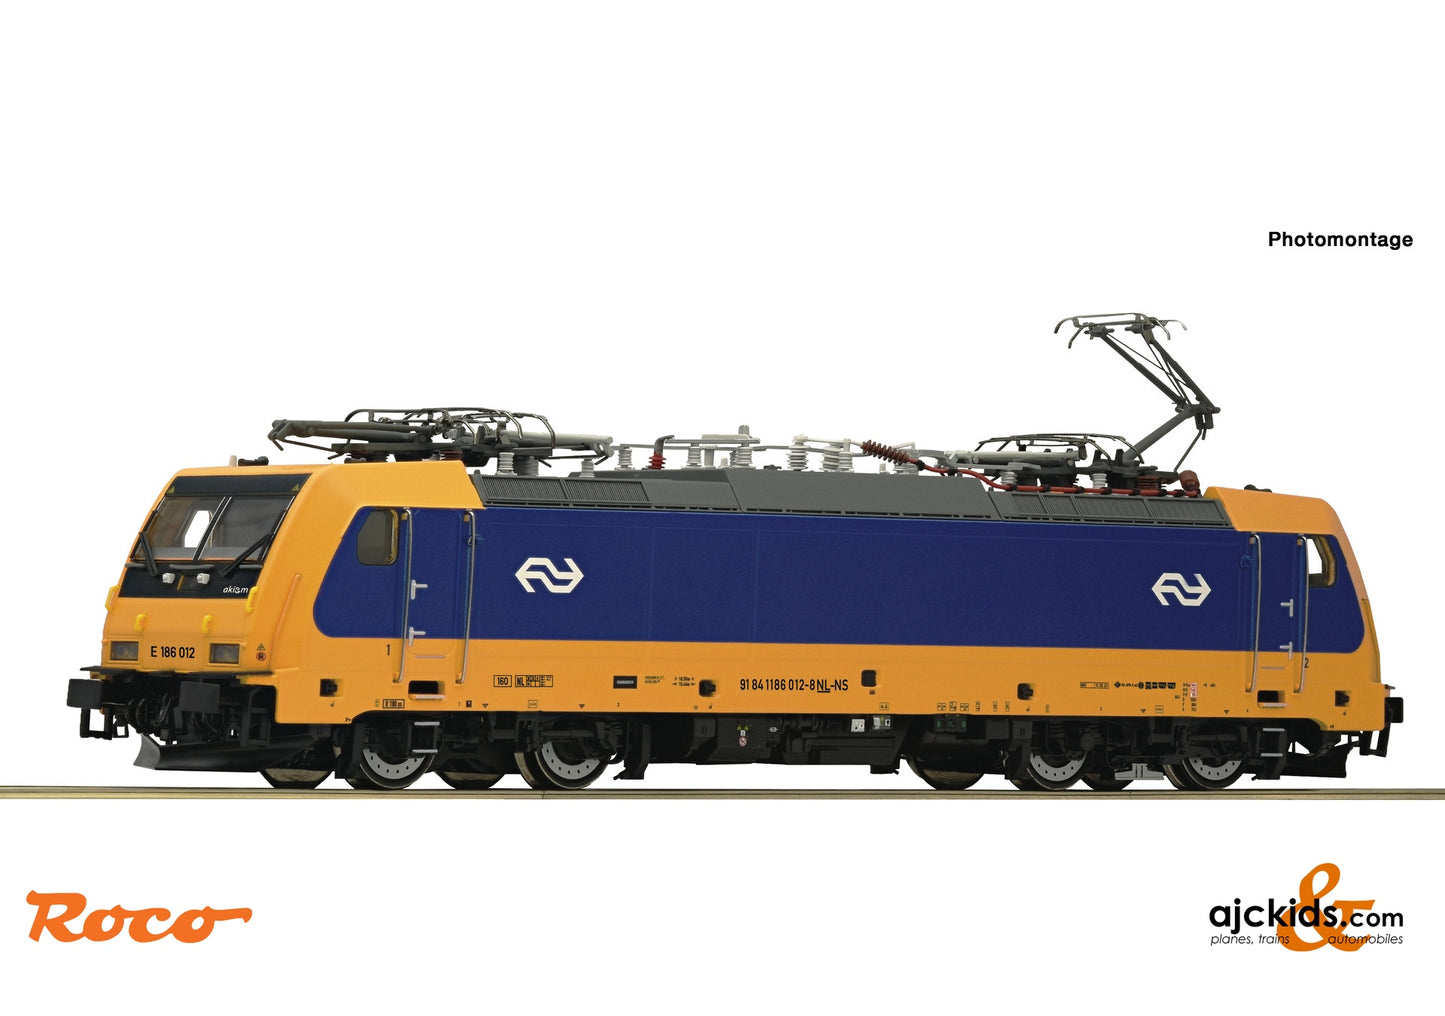 Roco 70653 - Electric locomotive E 186 012, NS at Ajckids.com